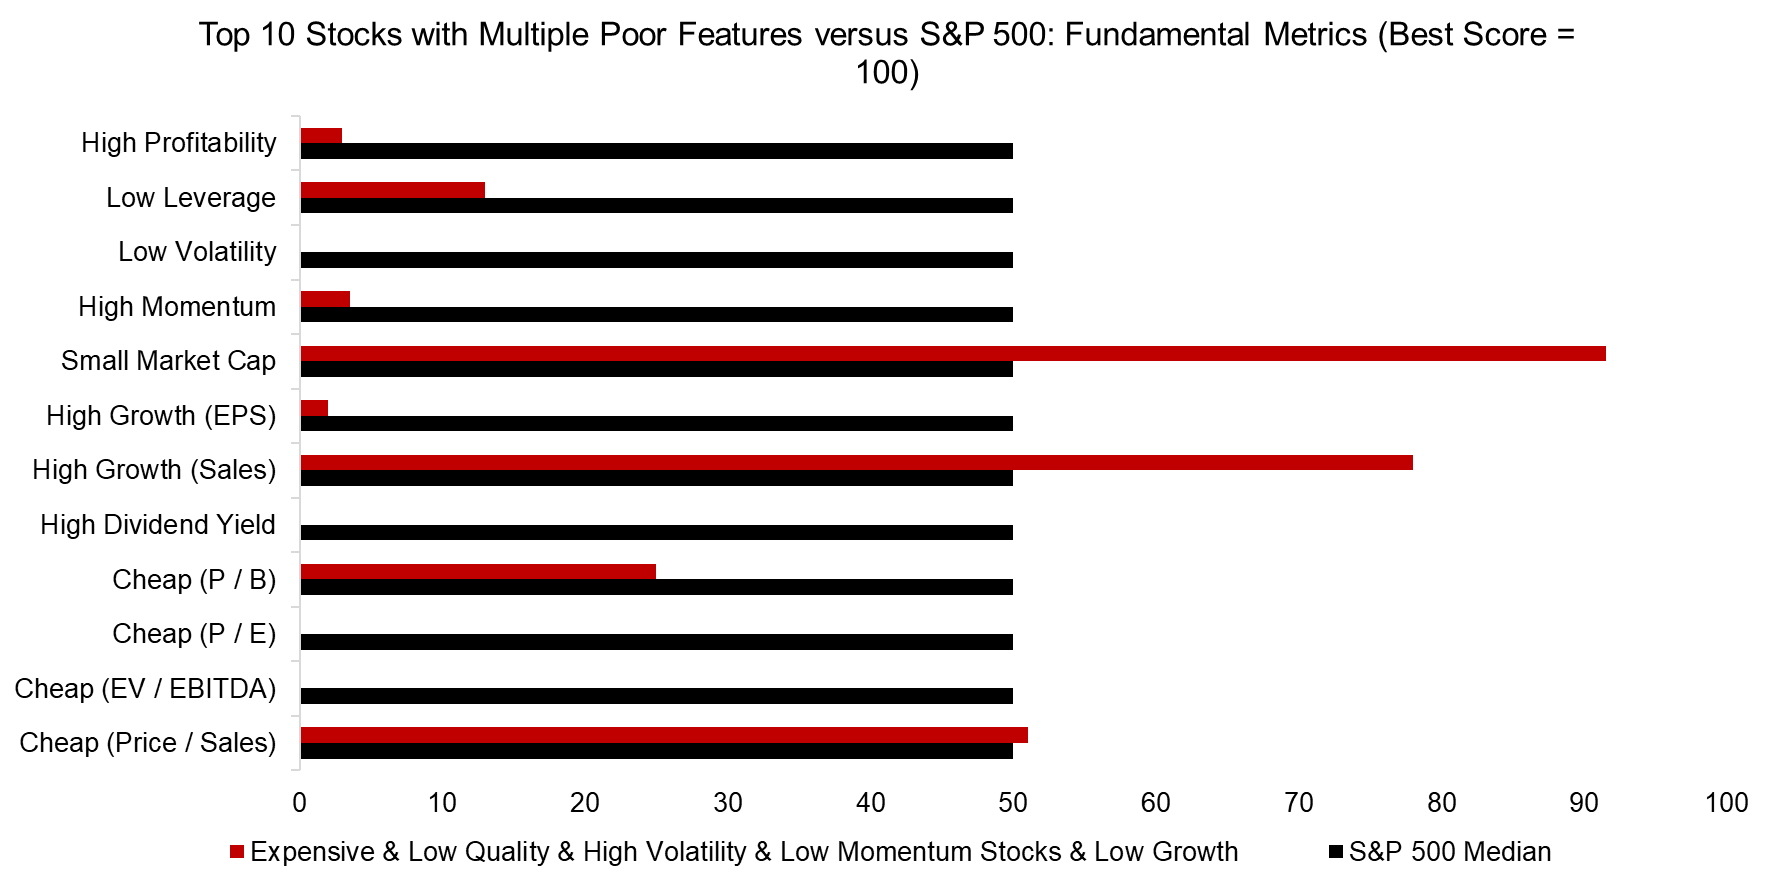 Top 10 Stocks with Multiple Poor Features versus S&P 500 Fundamental Metrics (Best Score = 100)